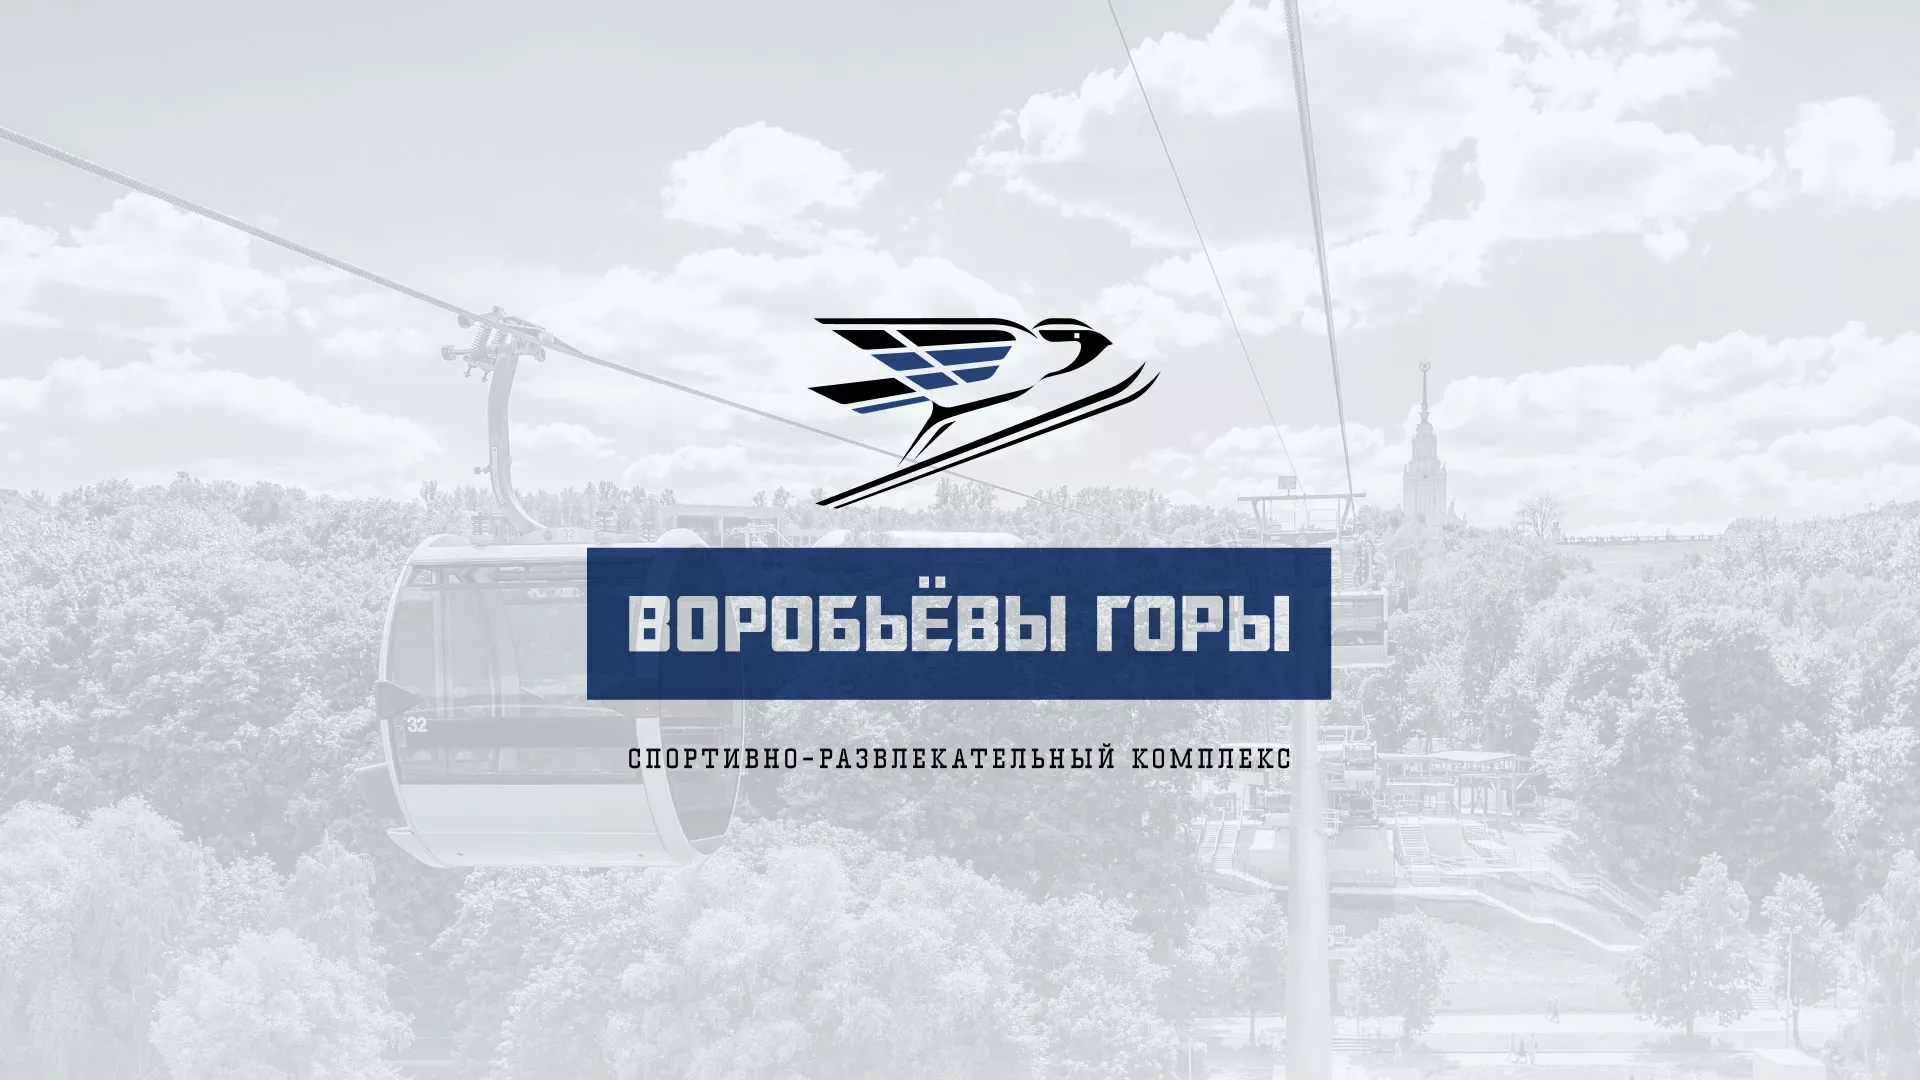 Разработка сайта в Кузнецке для спортивно-развлекательного комплекса «Воробьёвы горы»